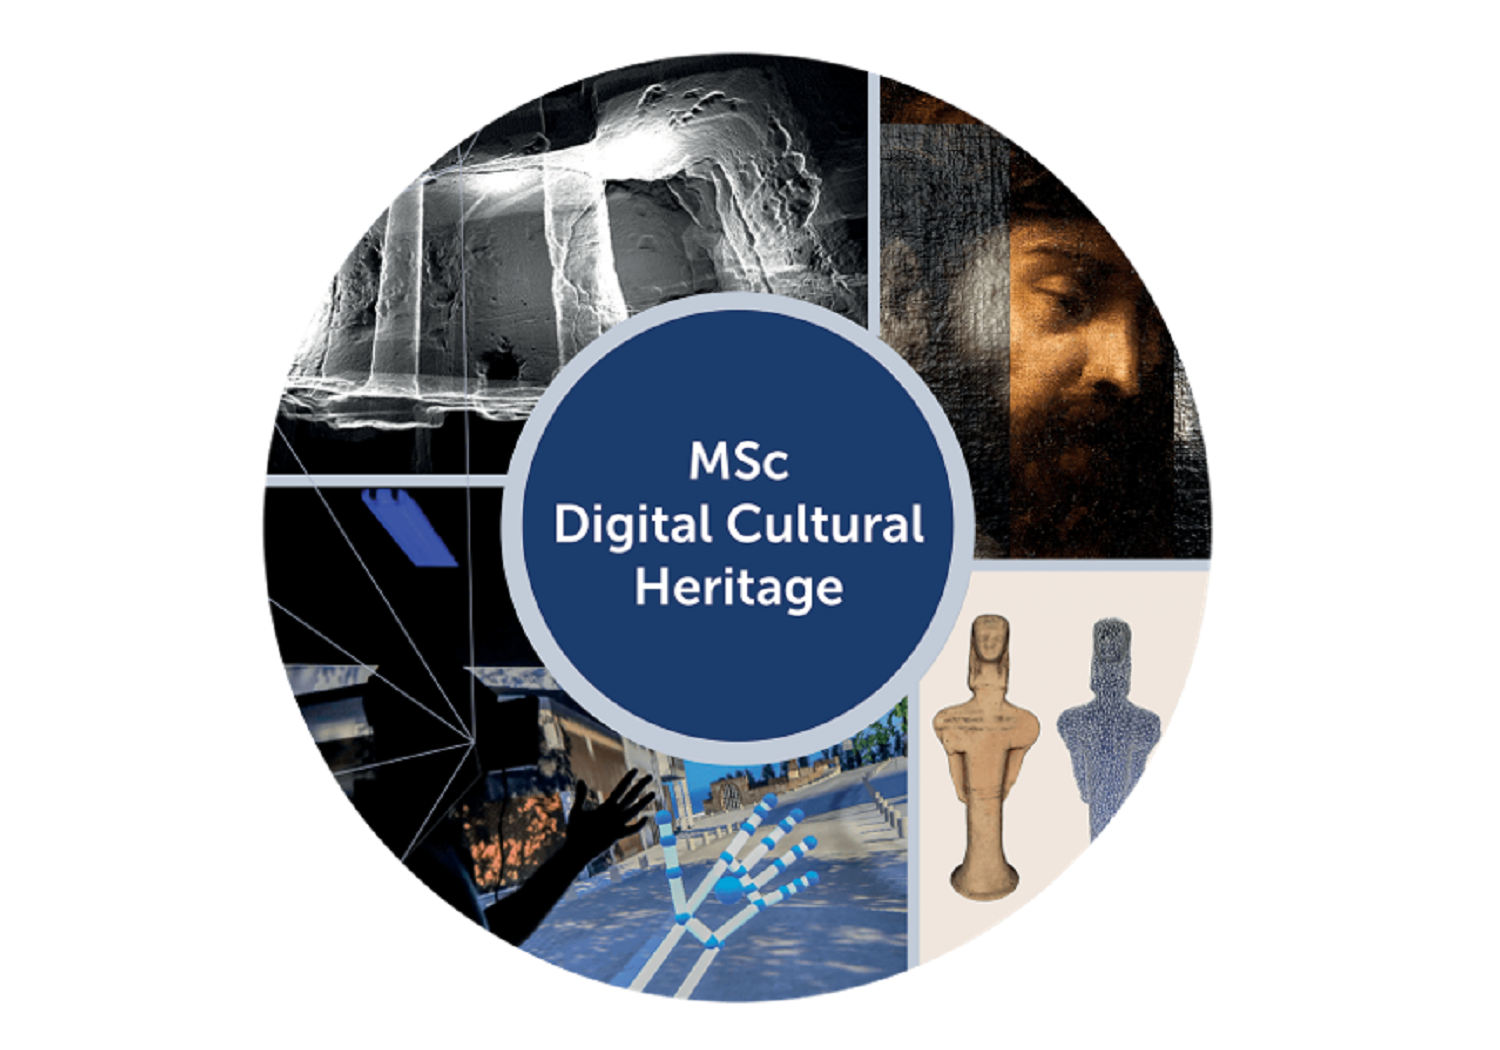 ΙΚύ: Νέο Πρόγραμμα Μεταπτυχιακών Σπουδών Μάστερ στην Ψηφιακή Πολιτιστική Κληρονομιά